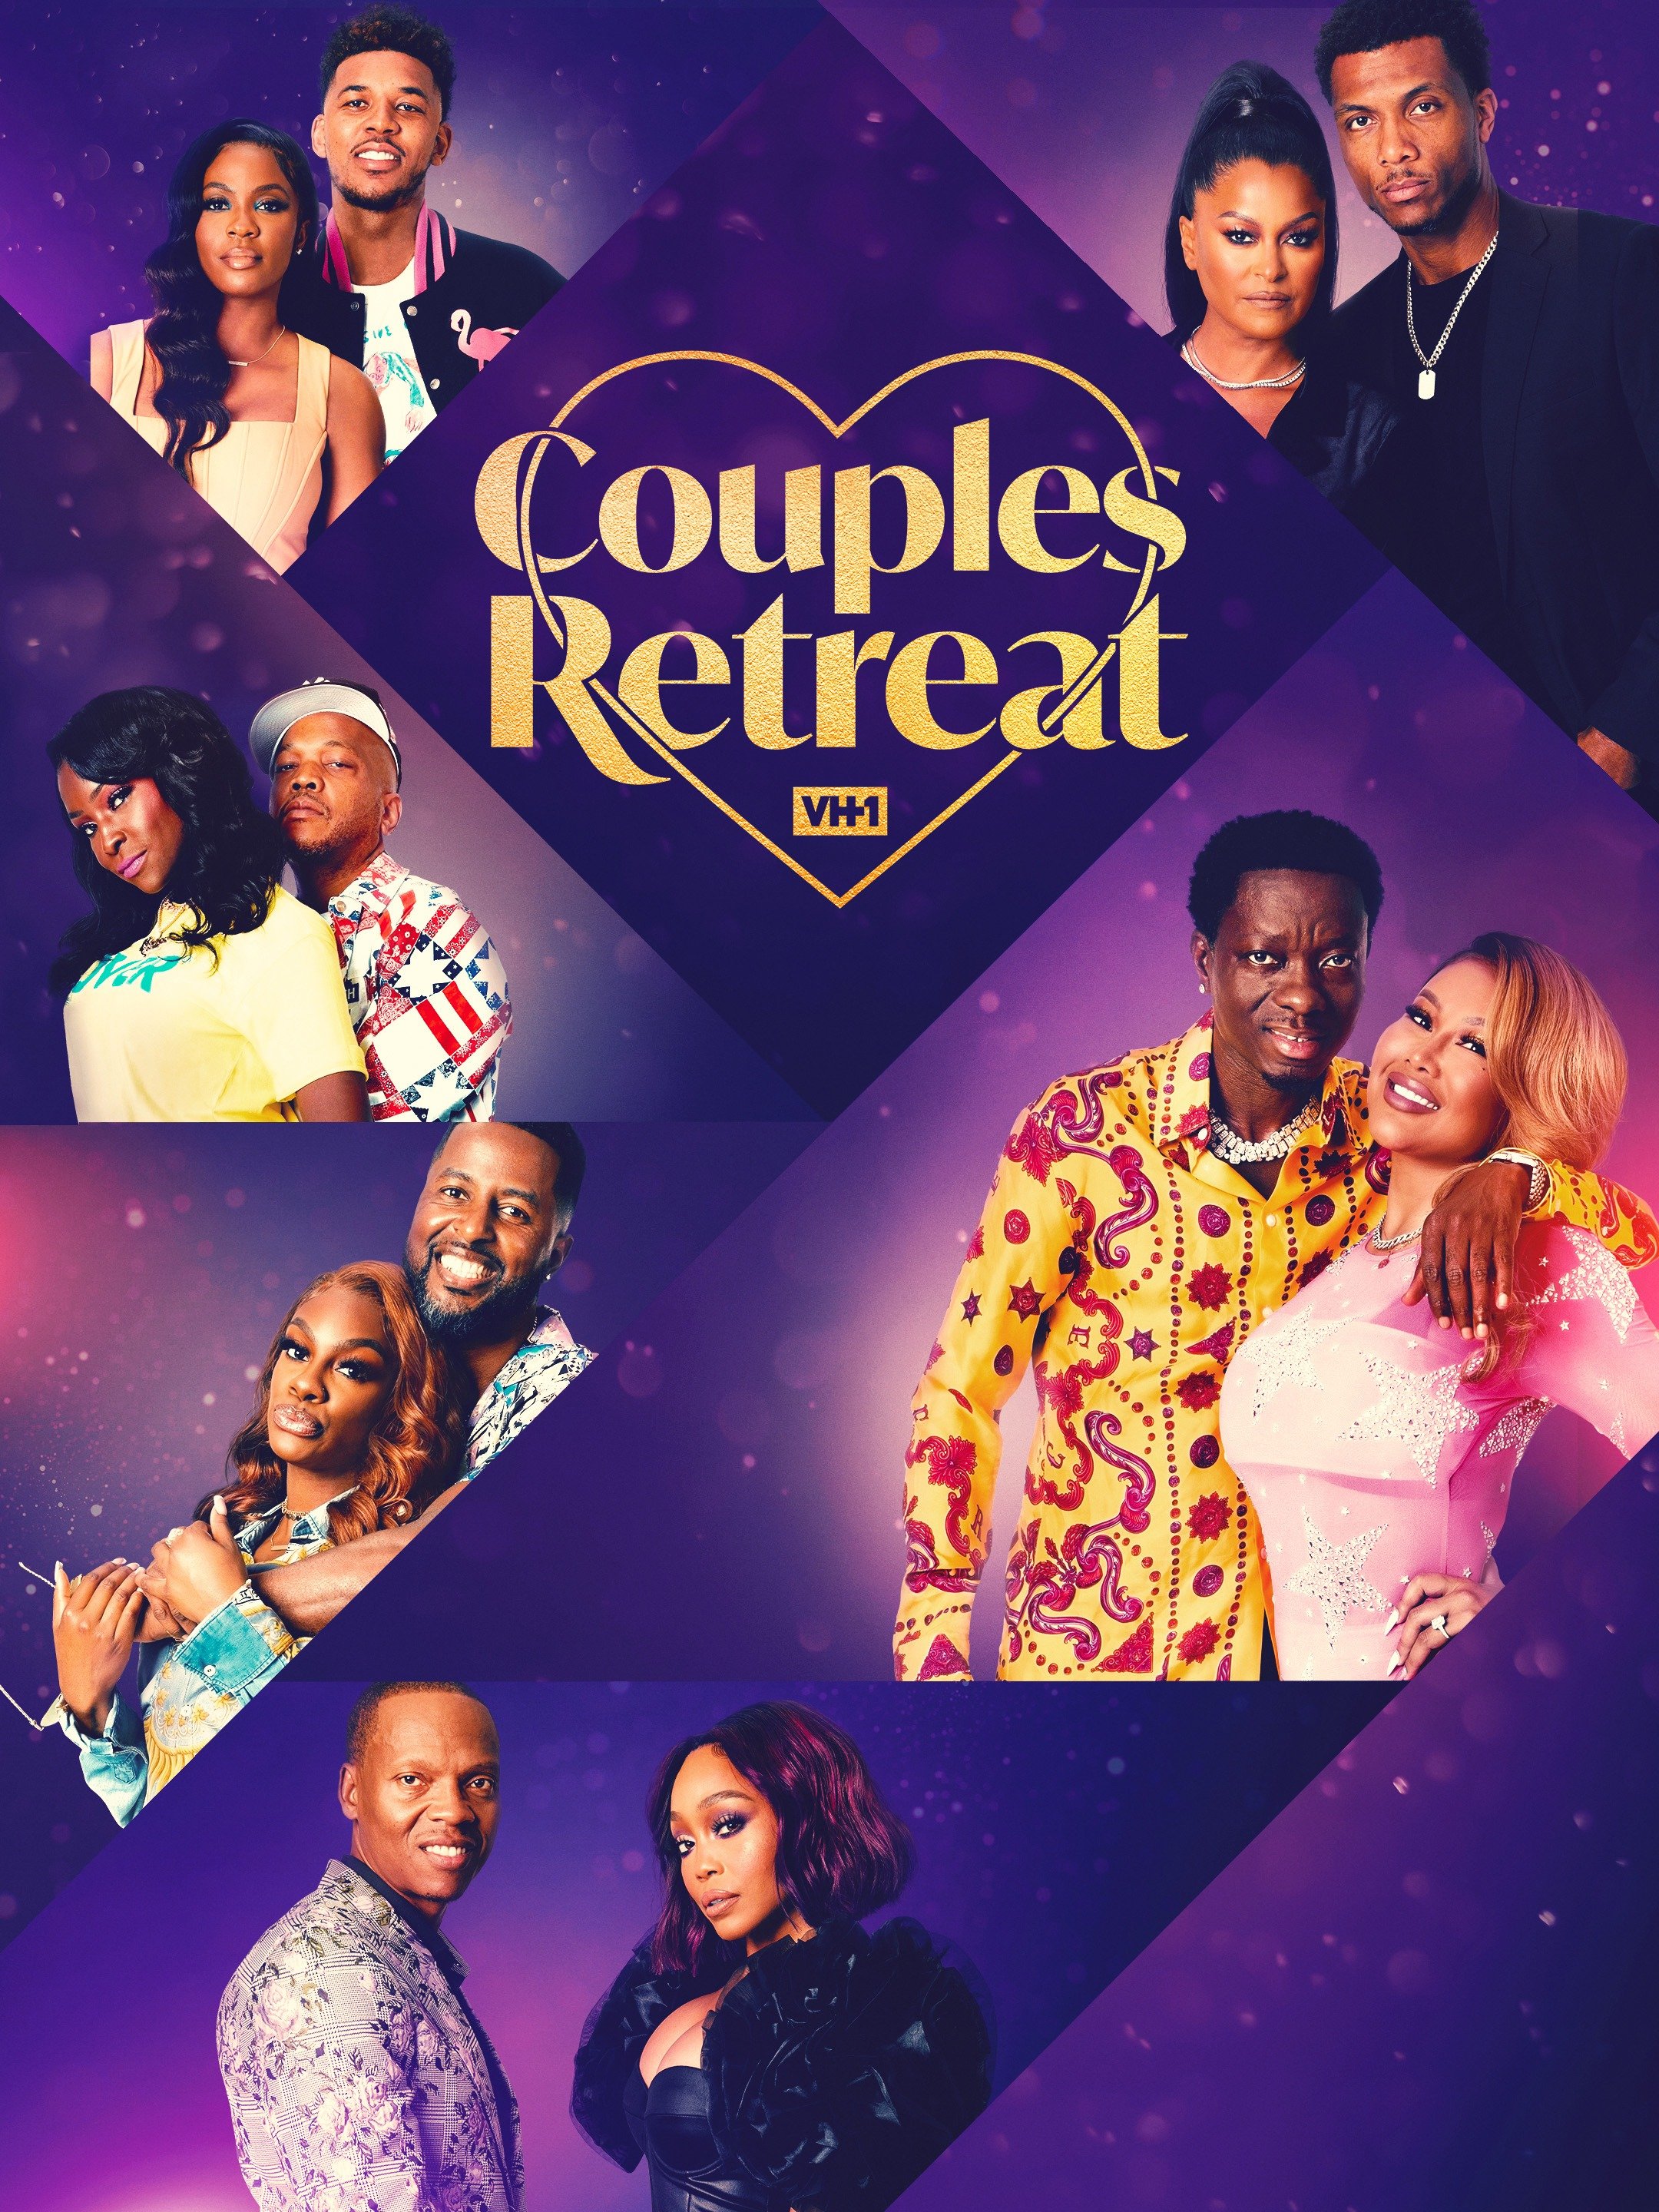 couples retreat cast